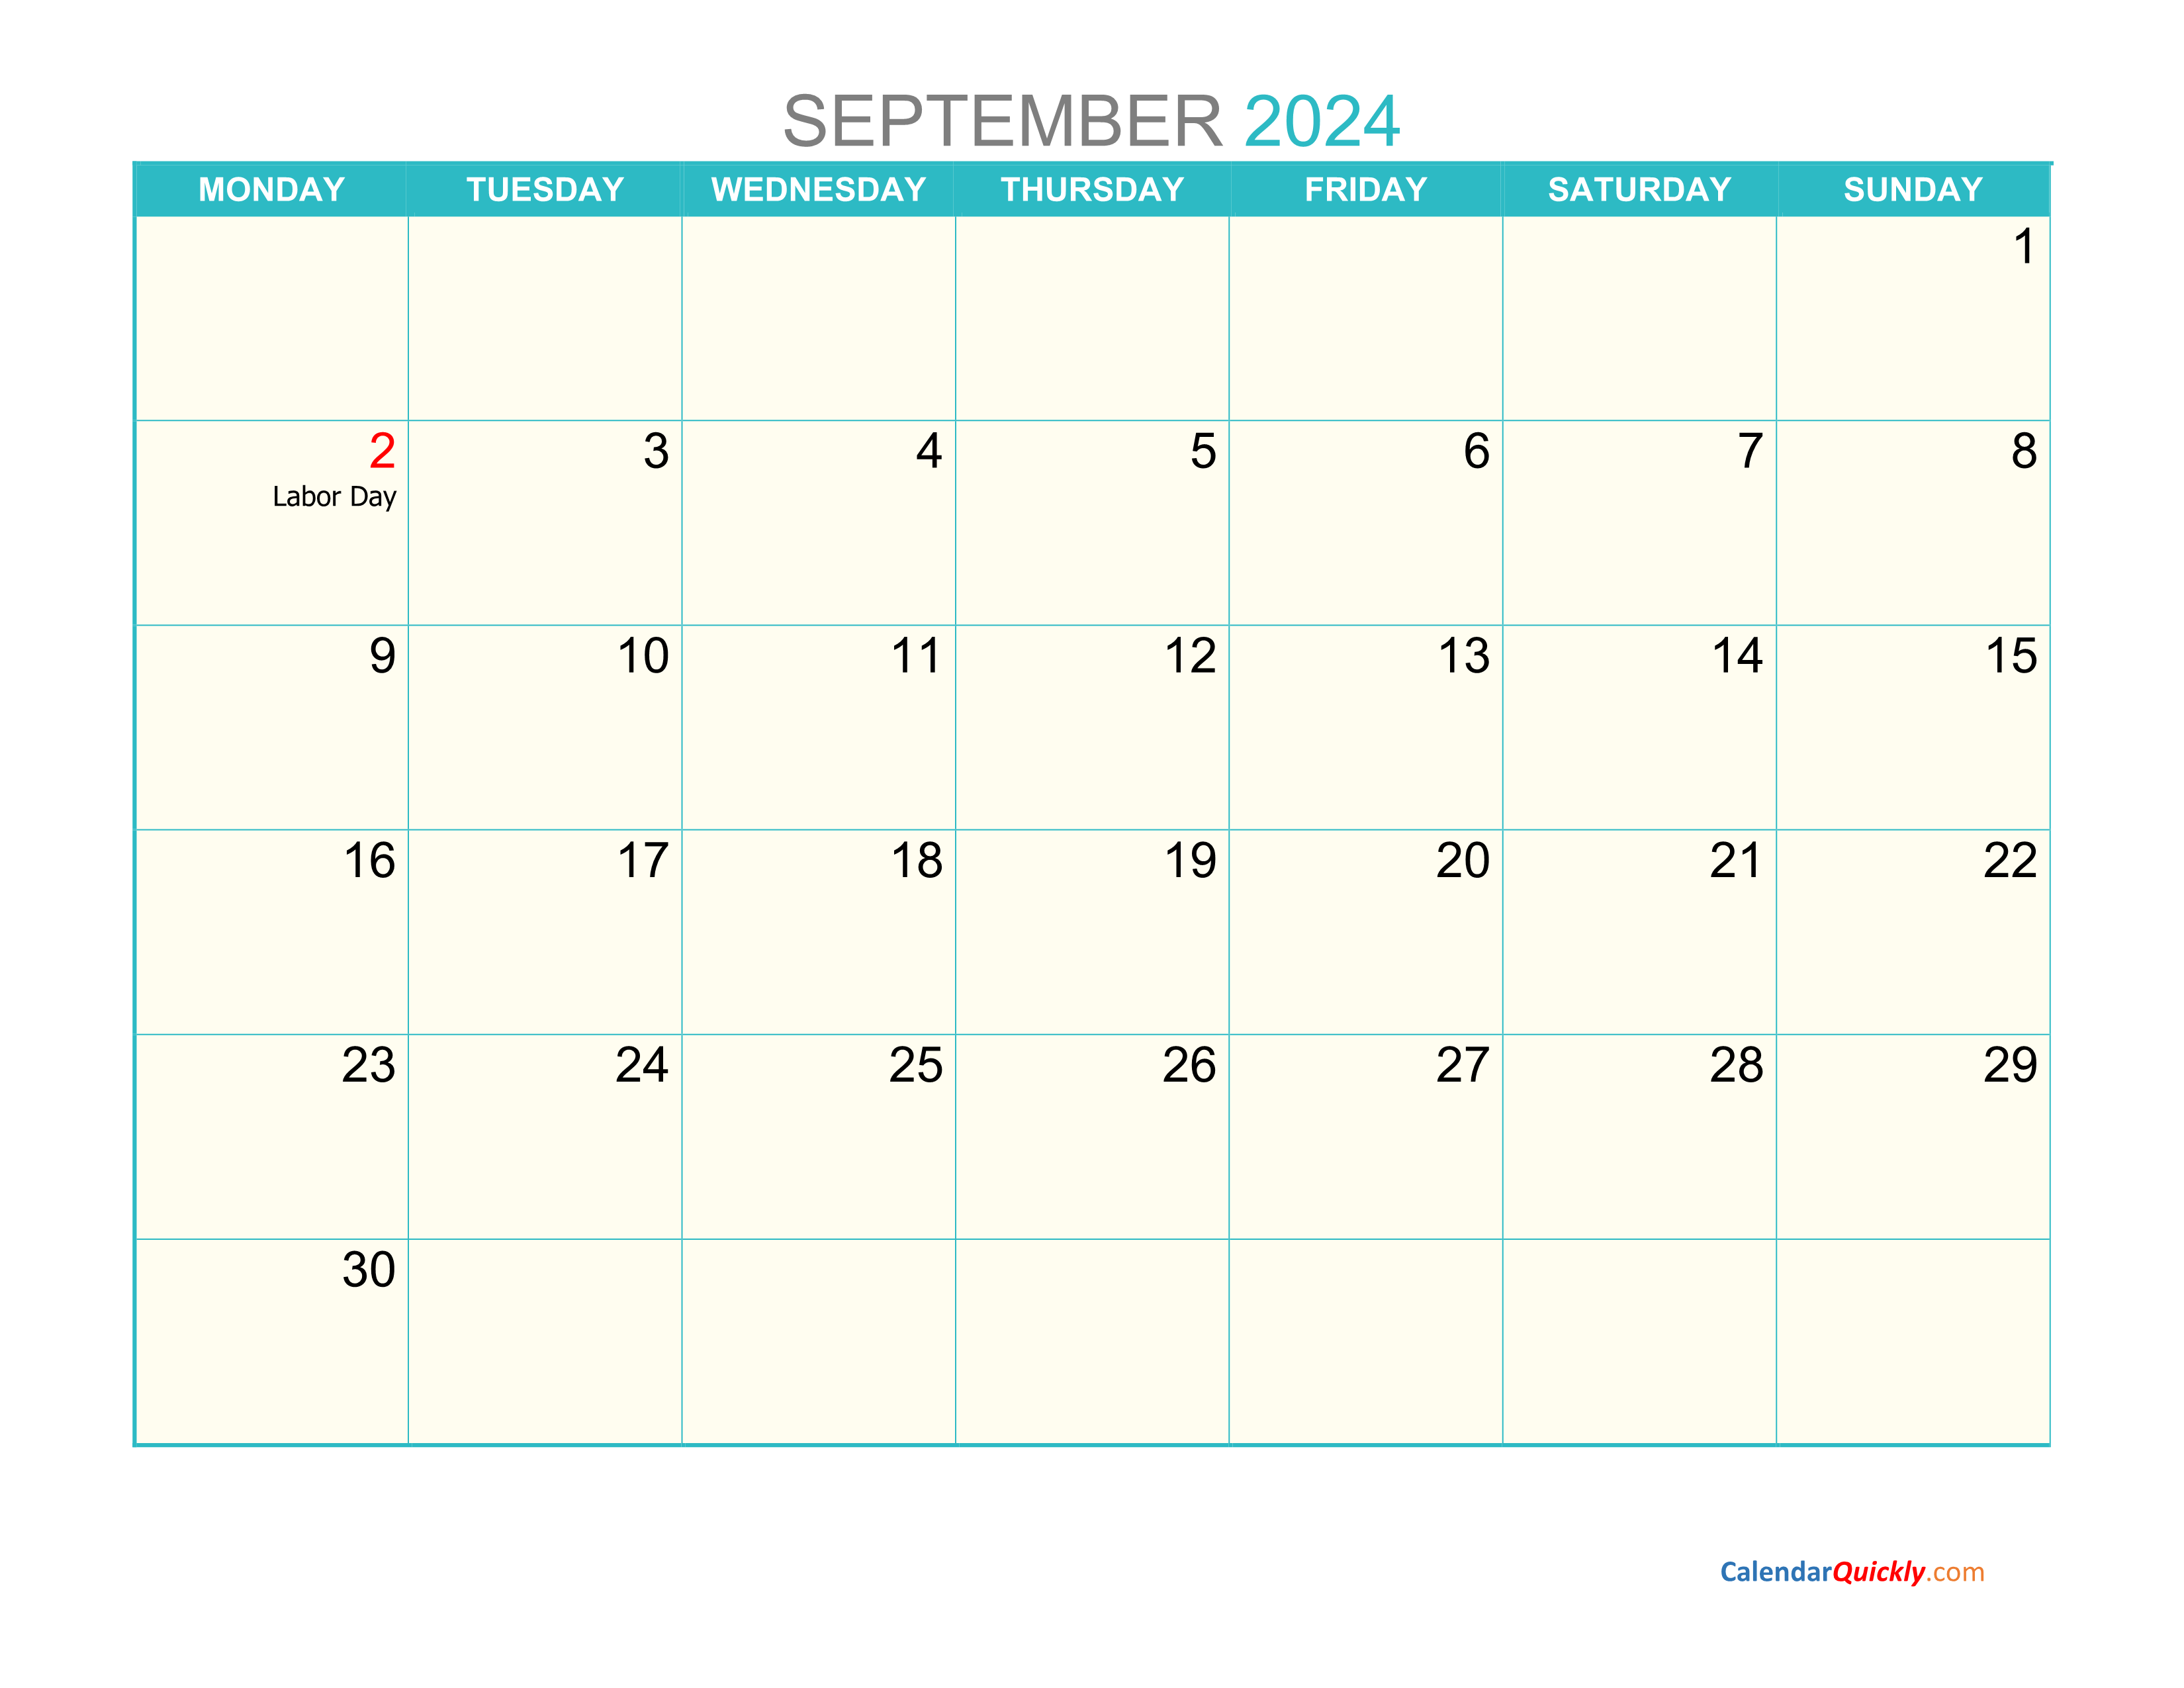 September Monday 2024 Calendar Printable | Calendar Quickly